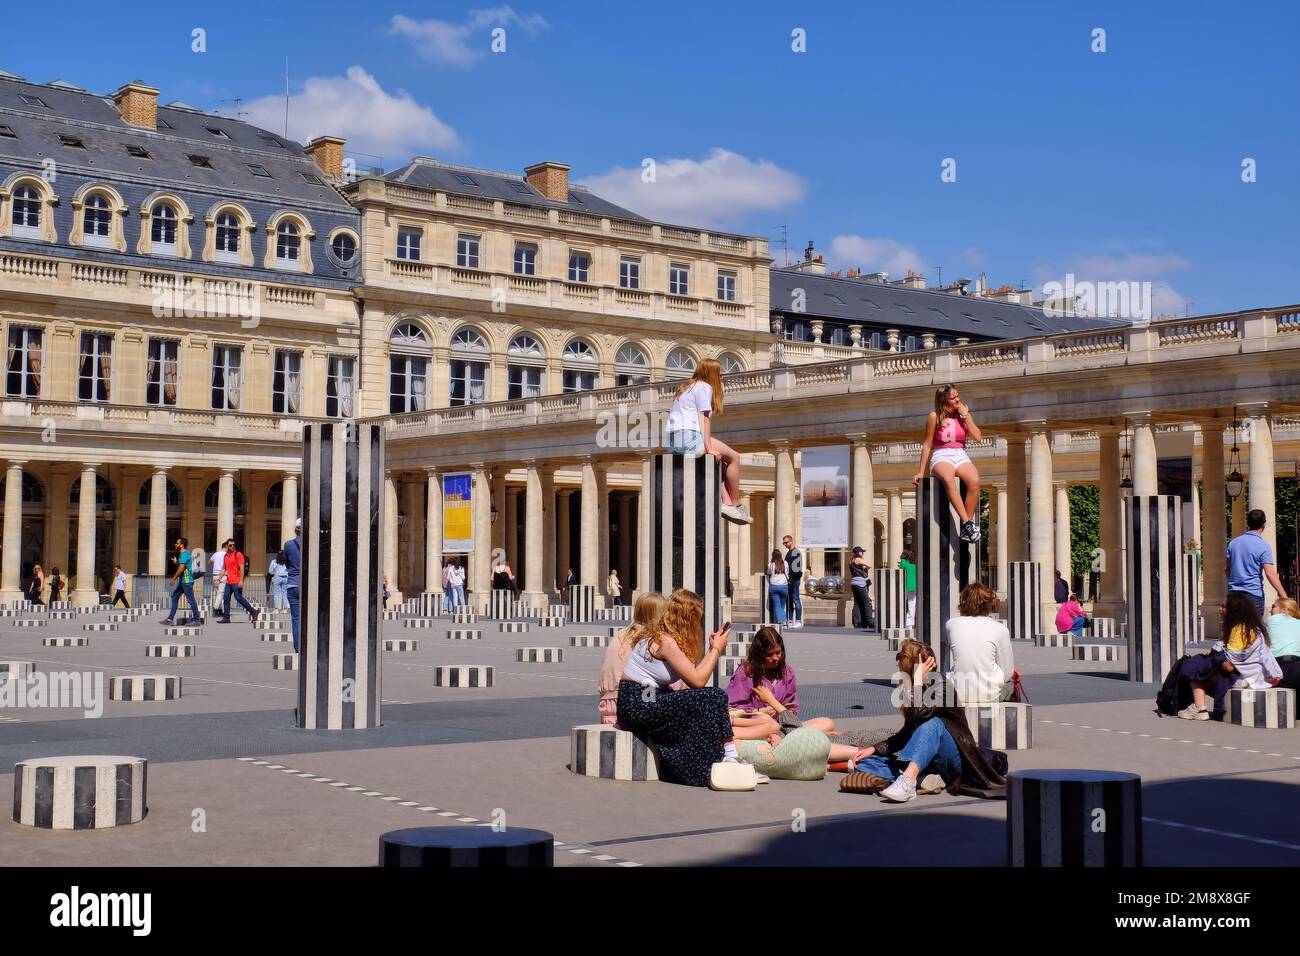 Paris: People enjoying the Colonnes de Buren (Les Deux Plateaux) by Daniel Buren in Cour d'Honneur of the Palais Royal, Paris, France Stock Photo